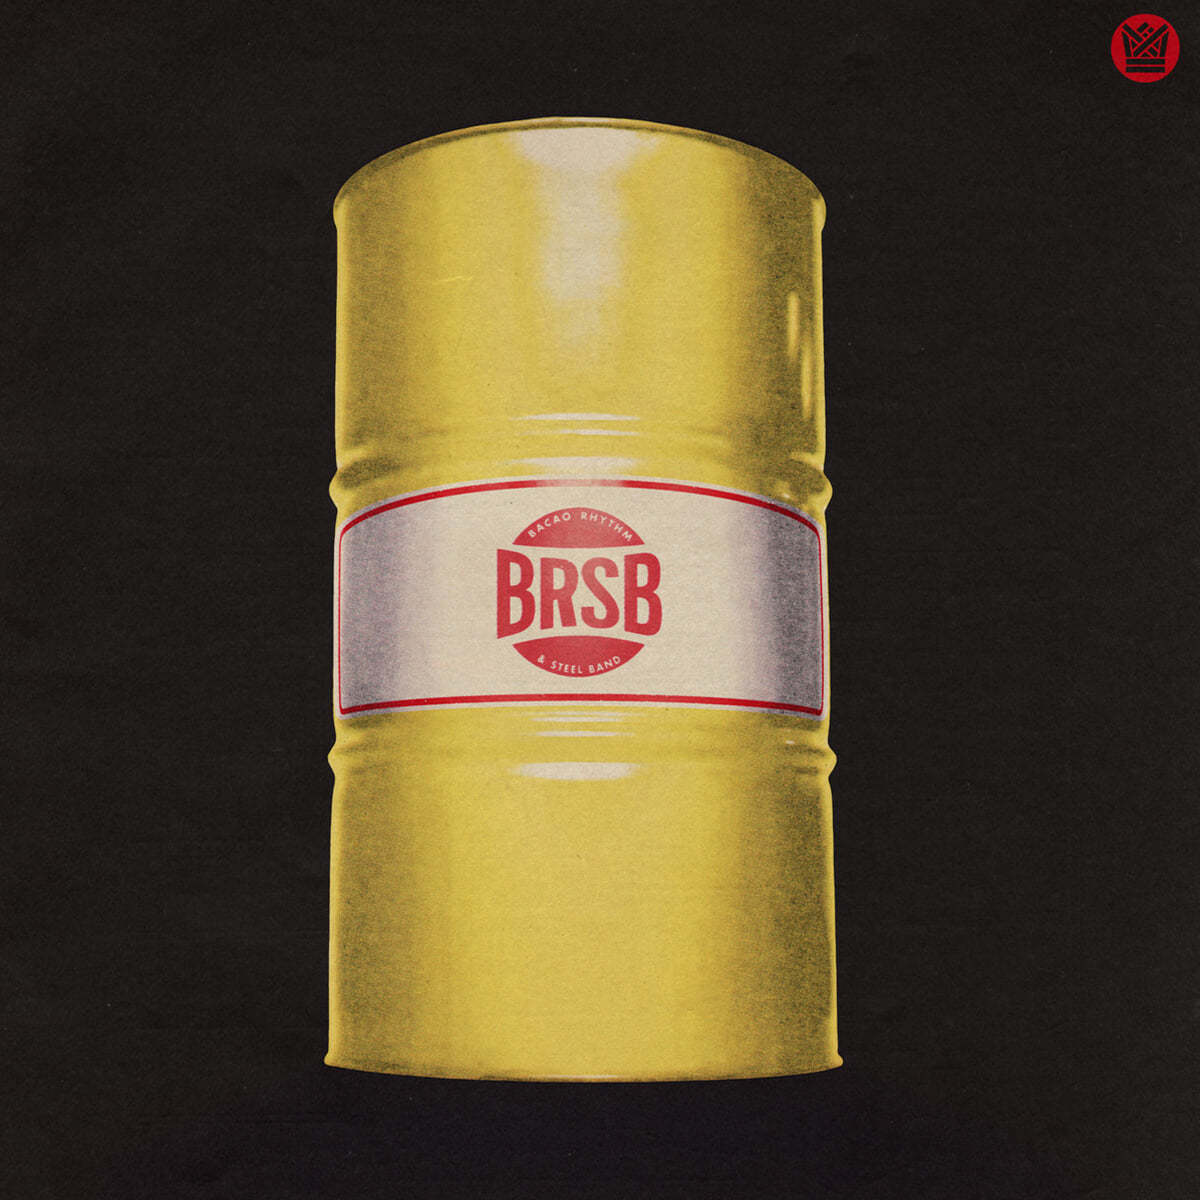 Bacao Rhythm & Steel Band (바카오 리듬 앤 스틸 밴드) - BRSB